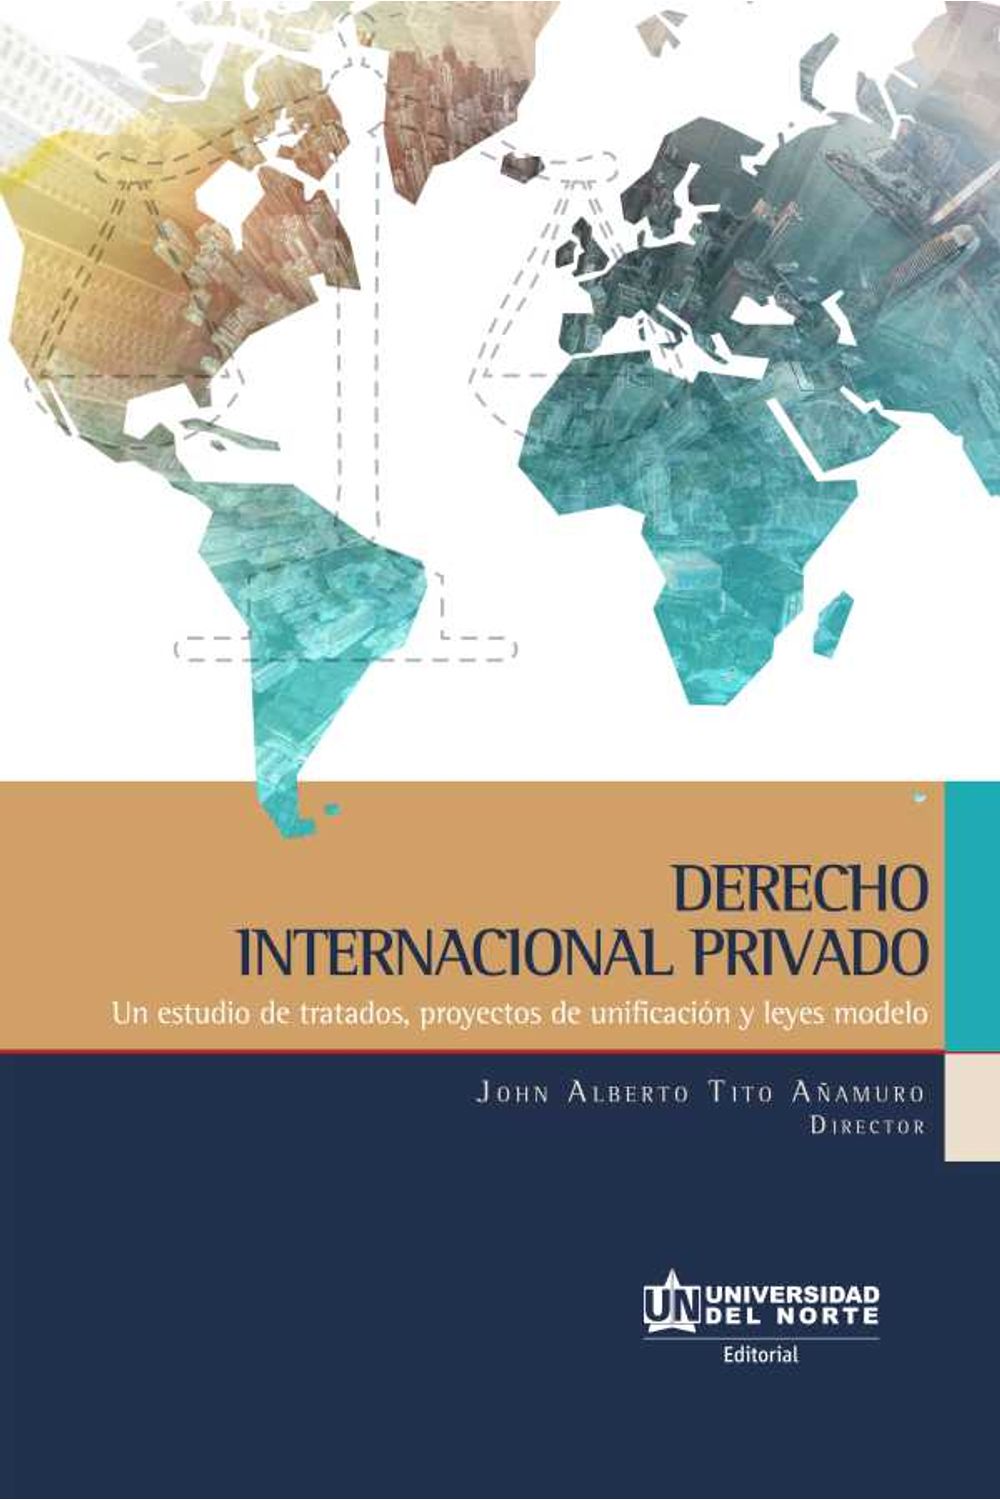 bw-derecho-internacional-privado-u-del-norte-editorial-9789587891935